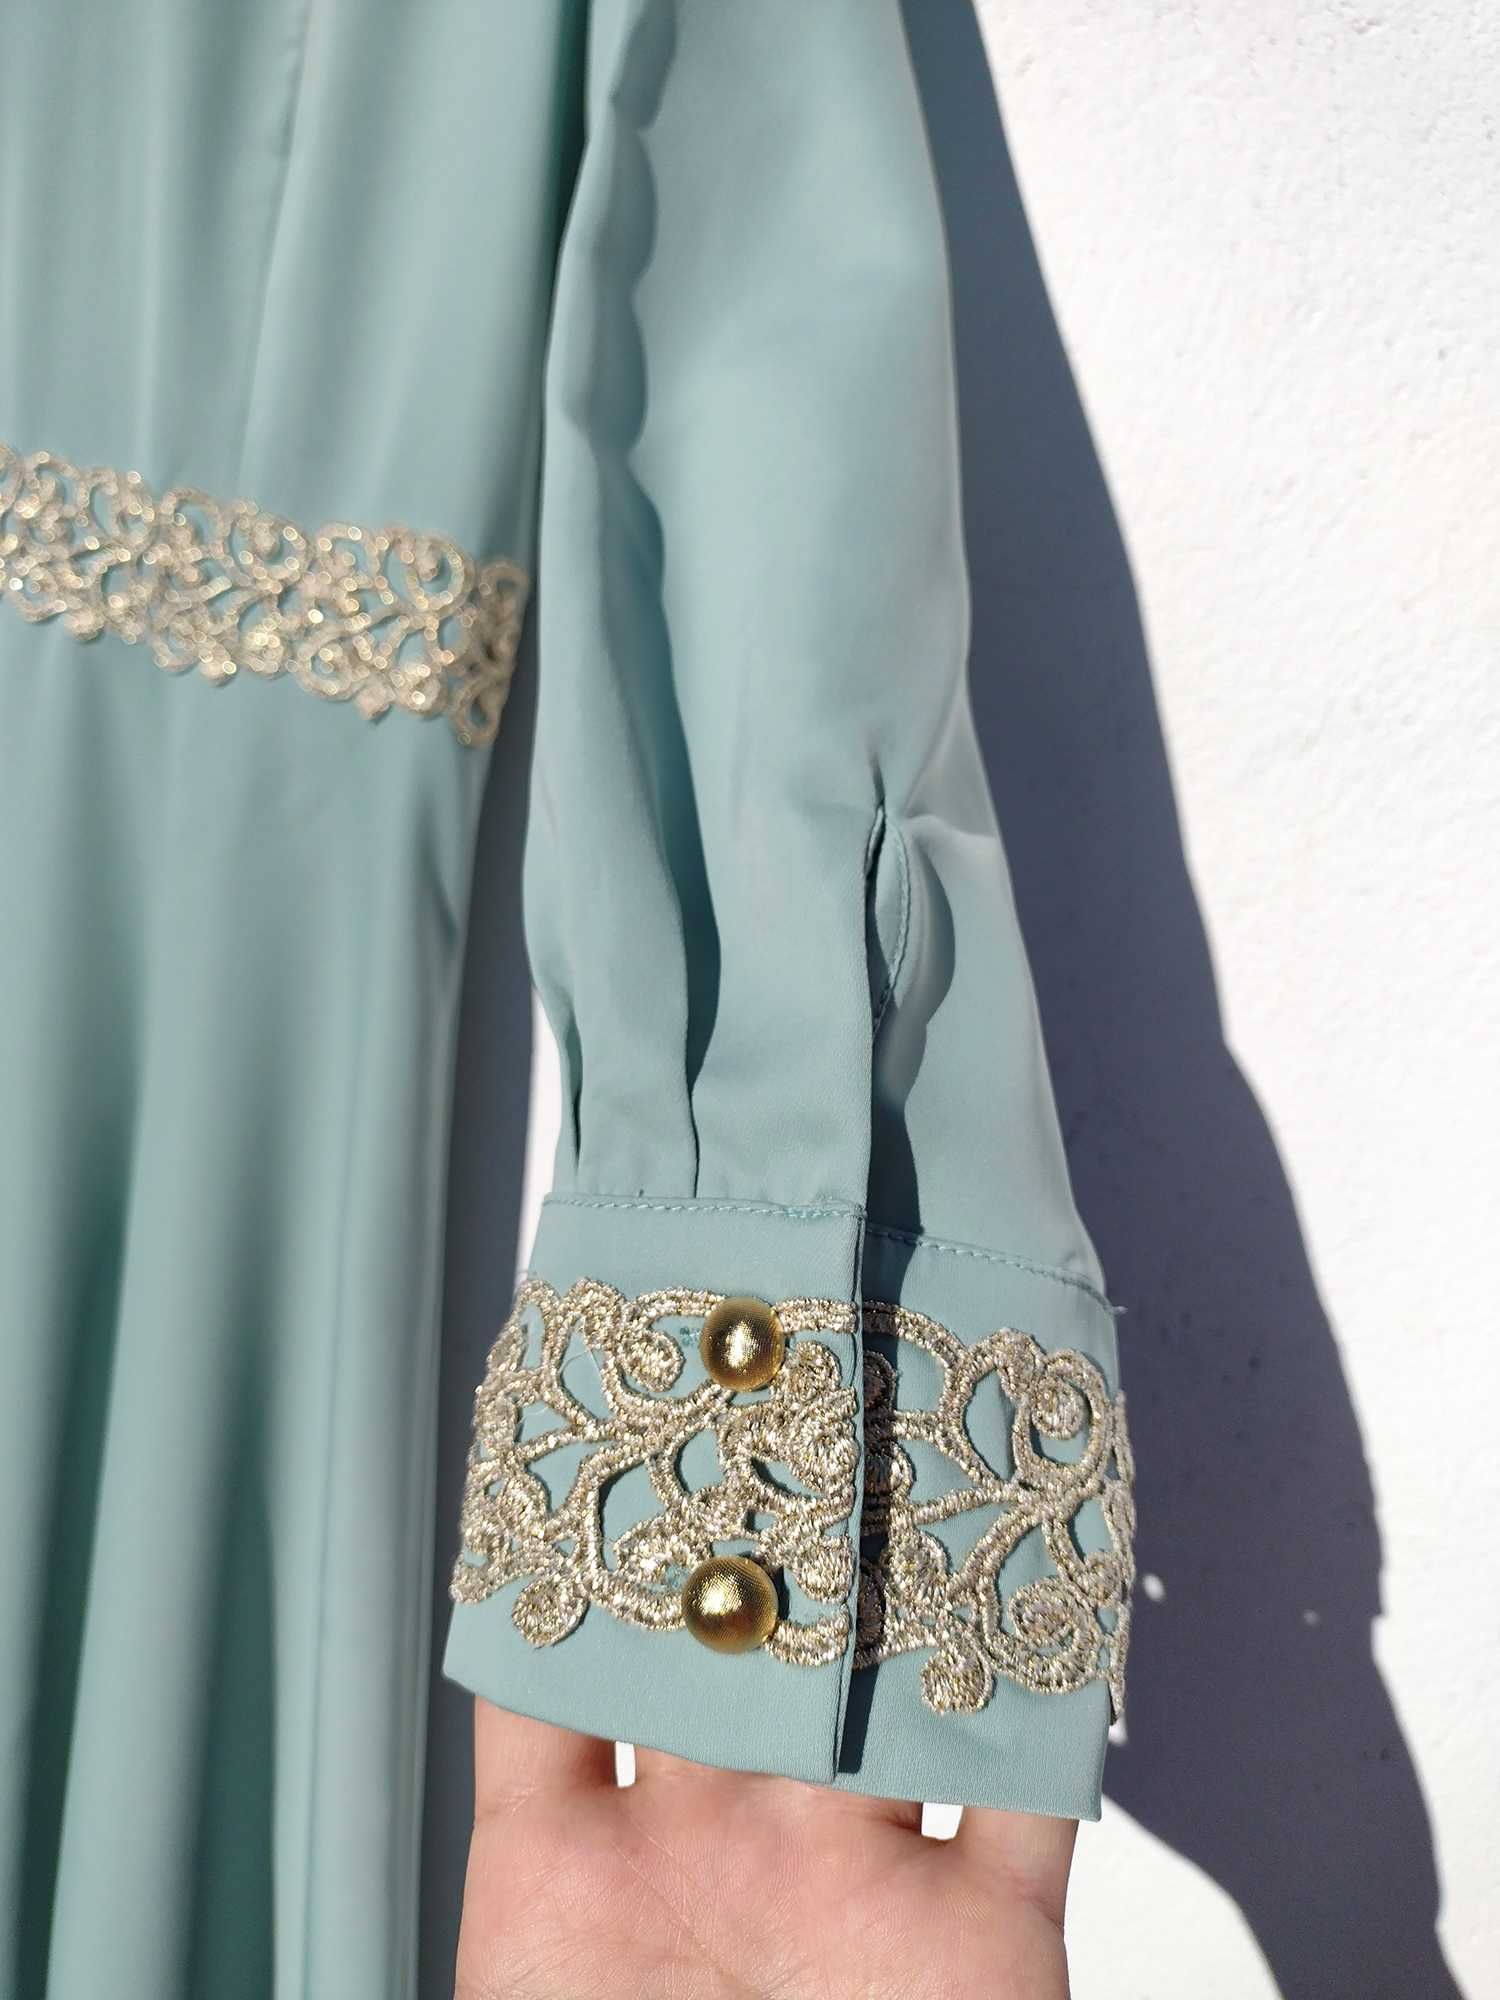 Длинное платье восточного стиля с вышивкой Yagmur Турция XL